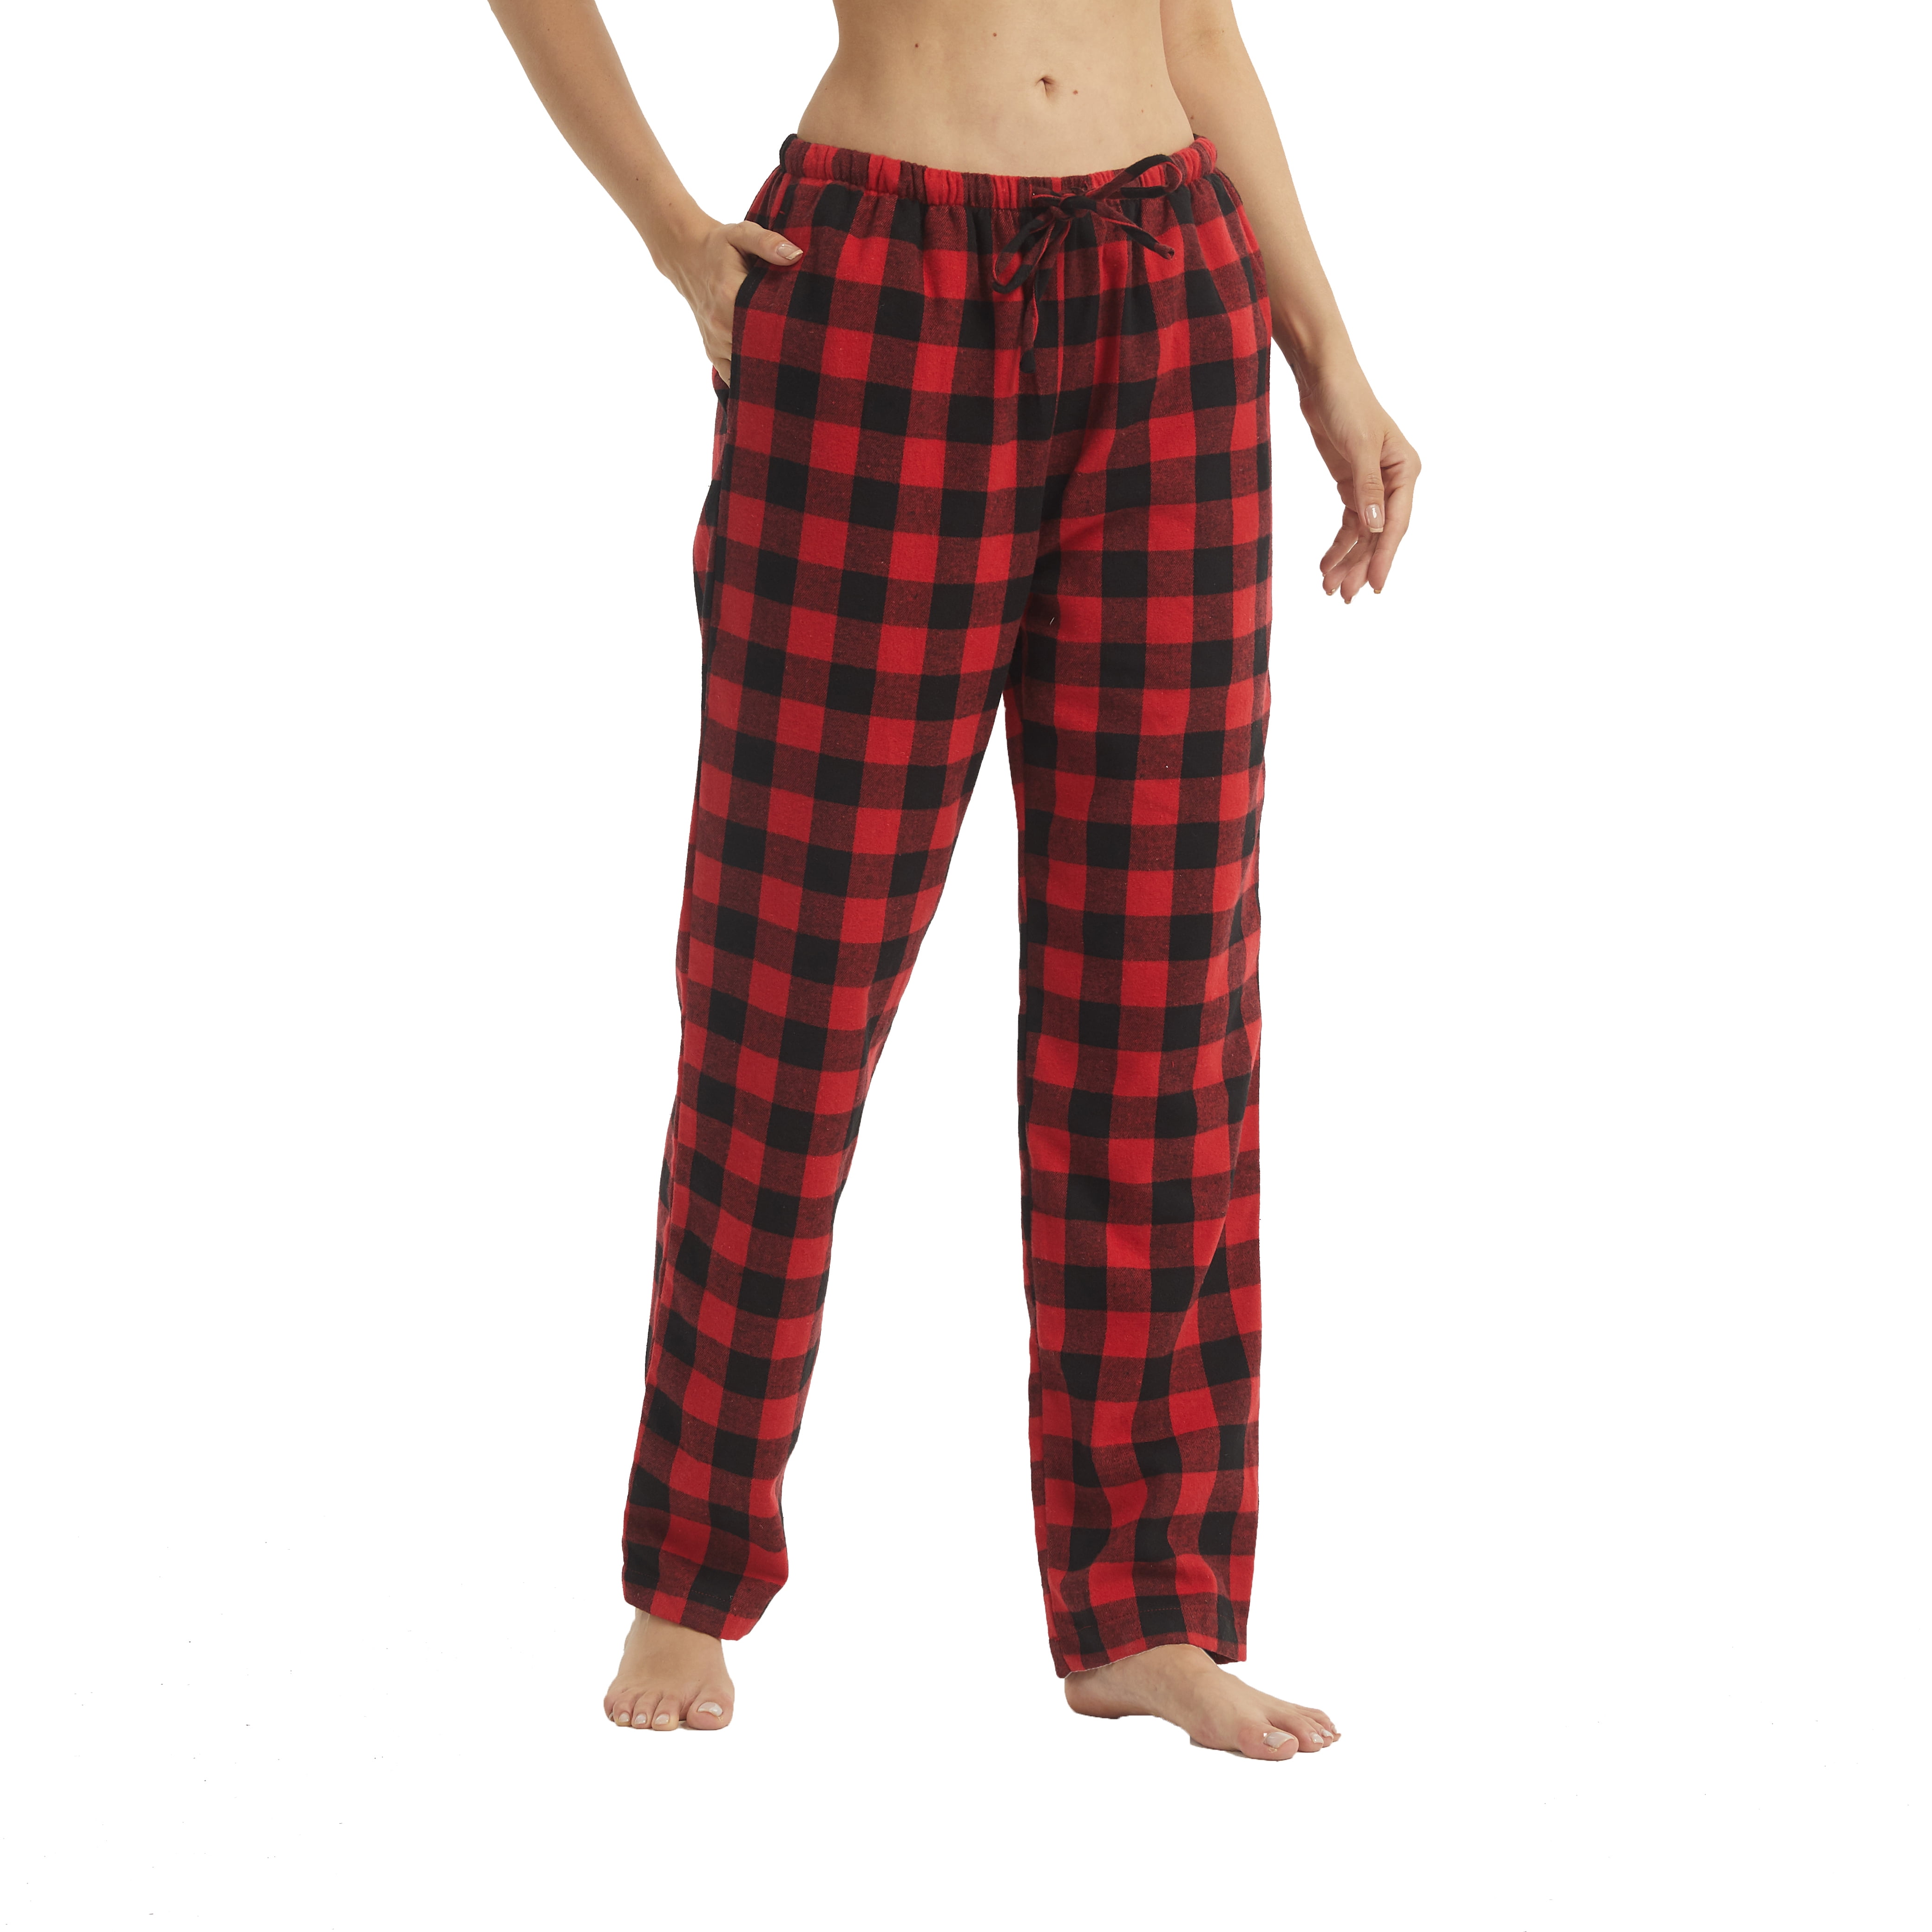 LANBAOSI Women Flannel Plaid Pajama Pants PJ Bottoms Size L - Walmart.com